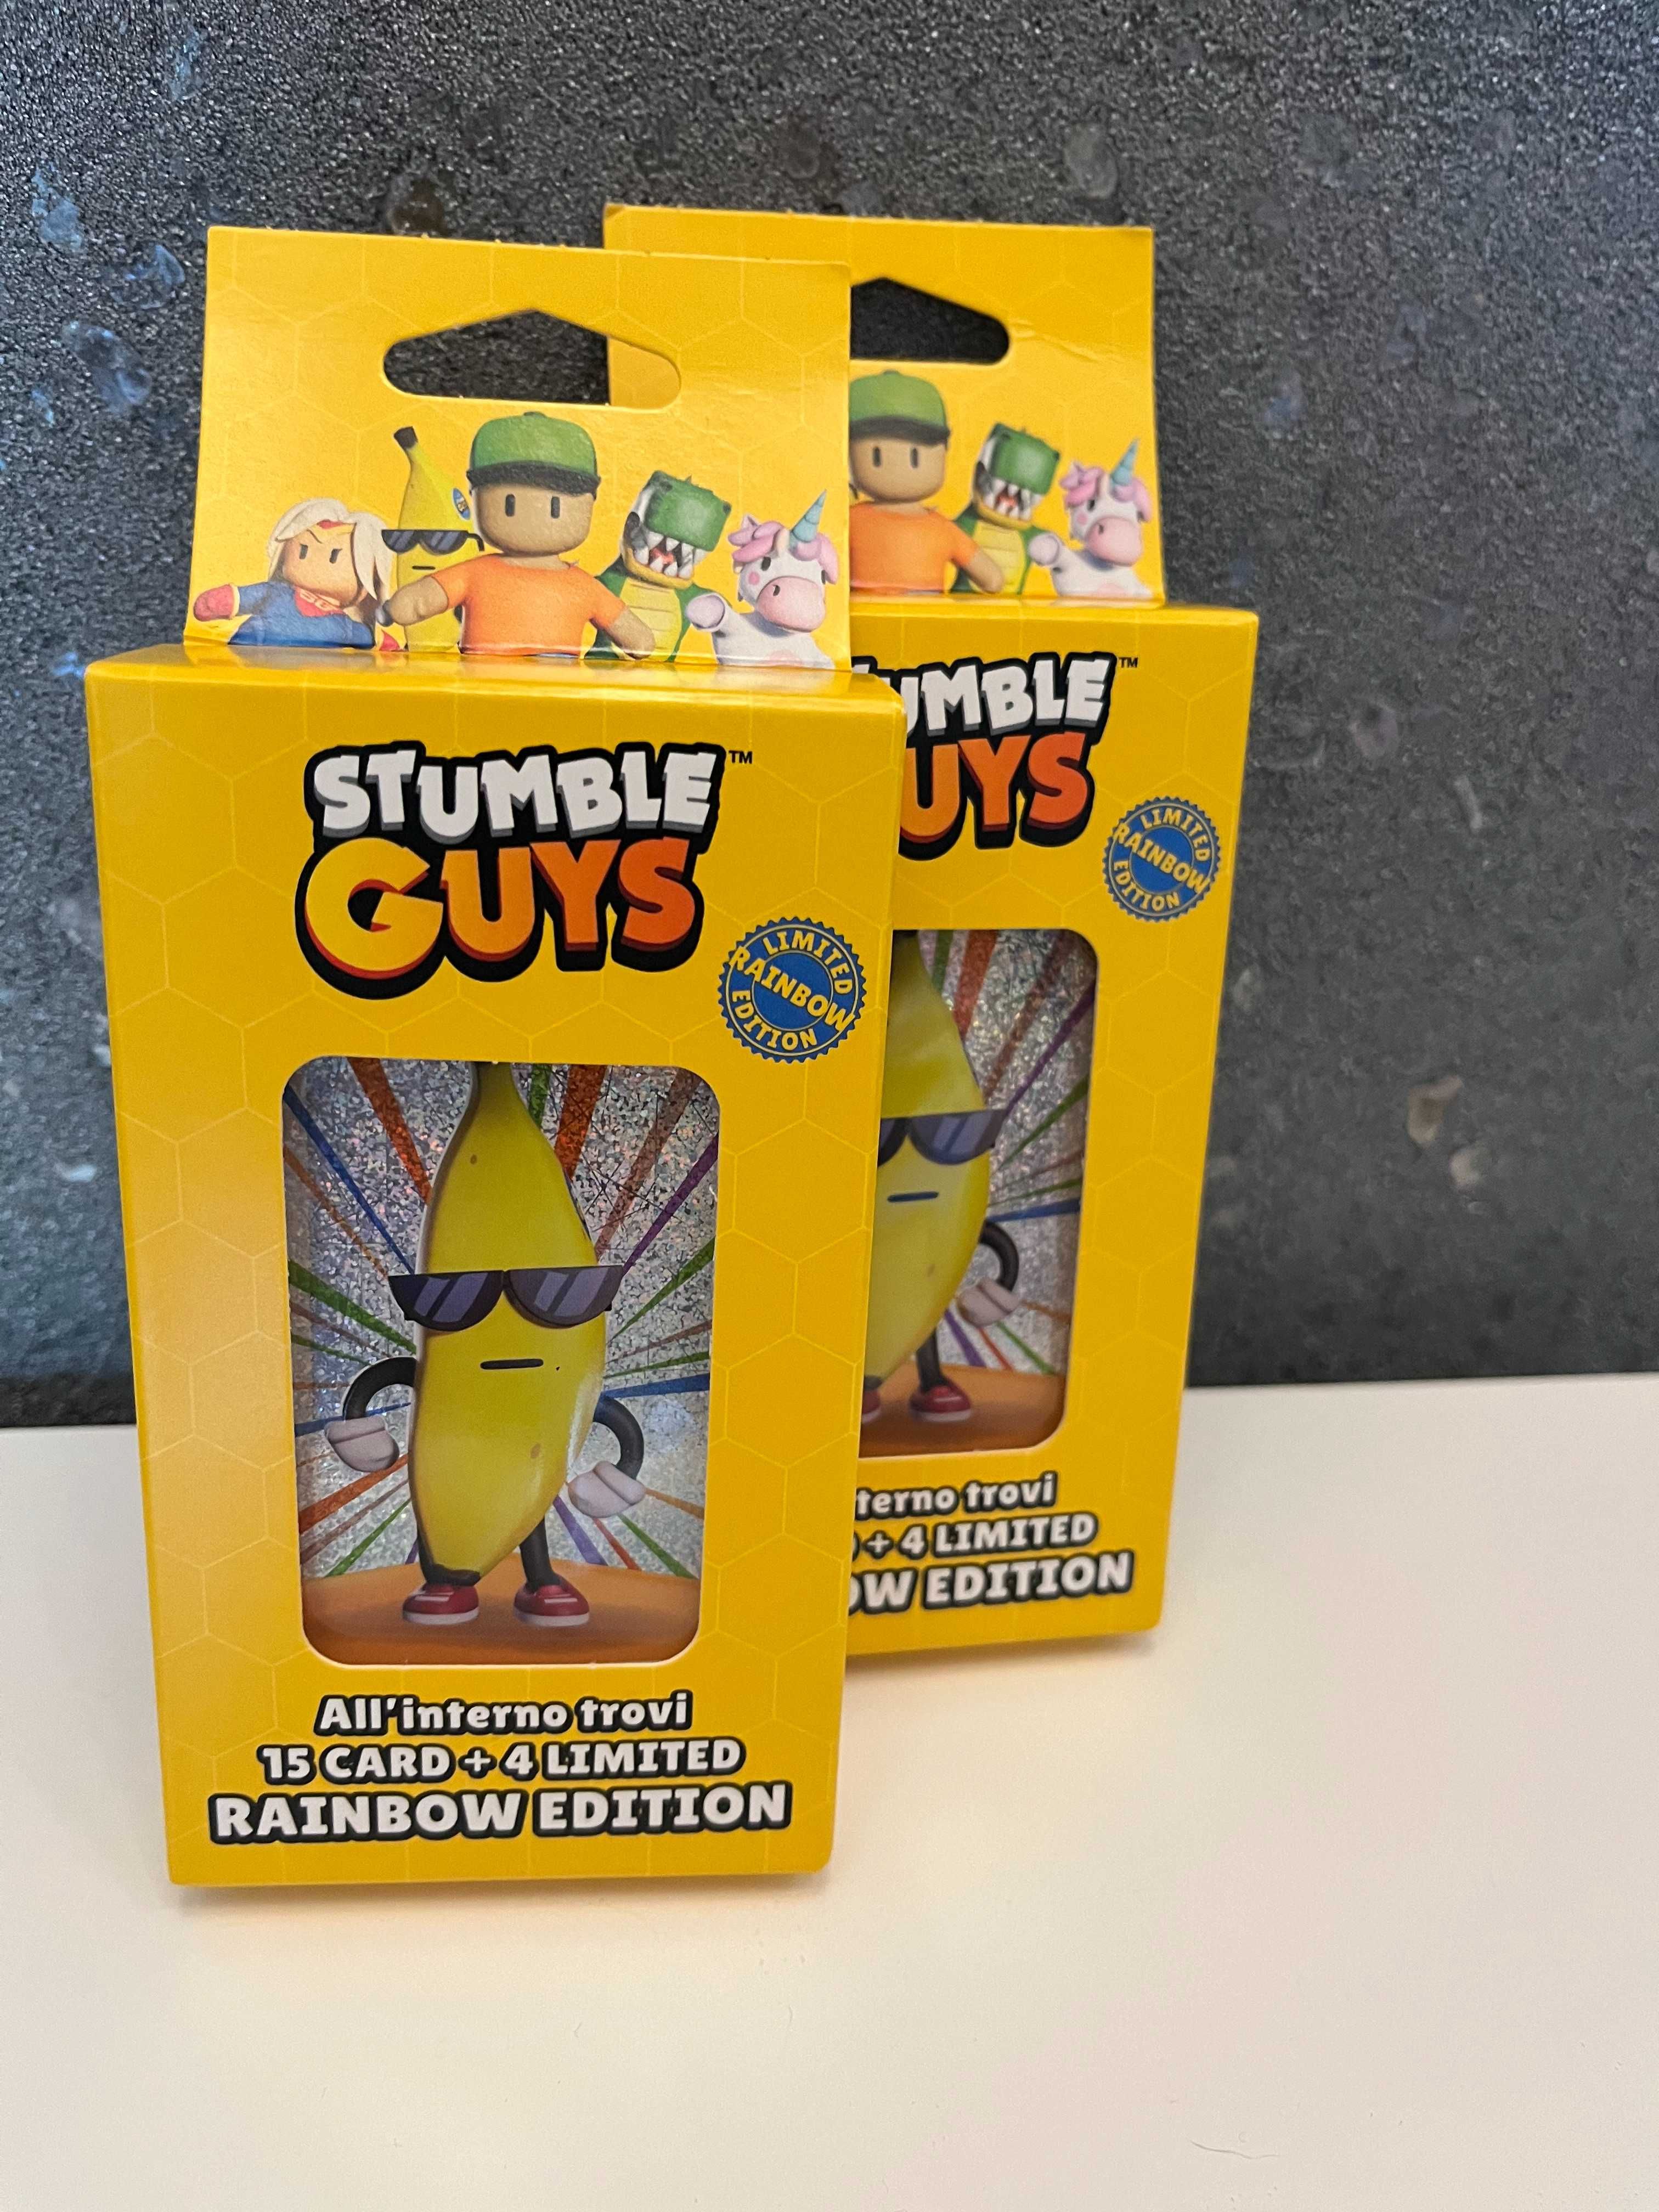 Saszetki Stumble Guys Limited Edition-kolor żółty!